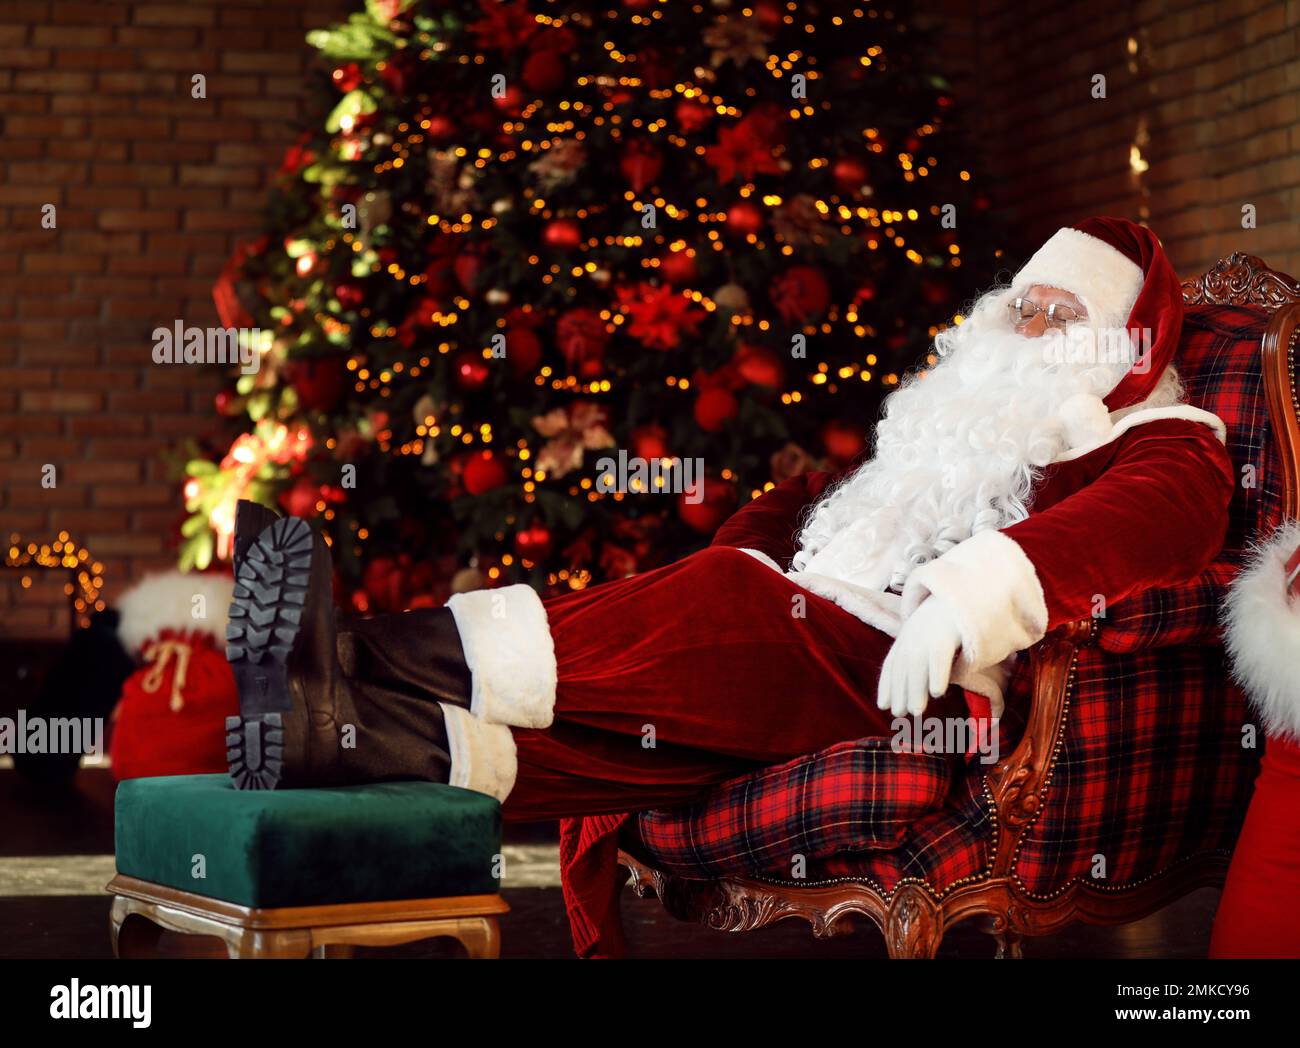 Le Père Noël repose dans un fauteuil près d'un arbre de Noël décoré à l'intérieur Banque D'Images